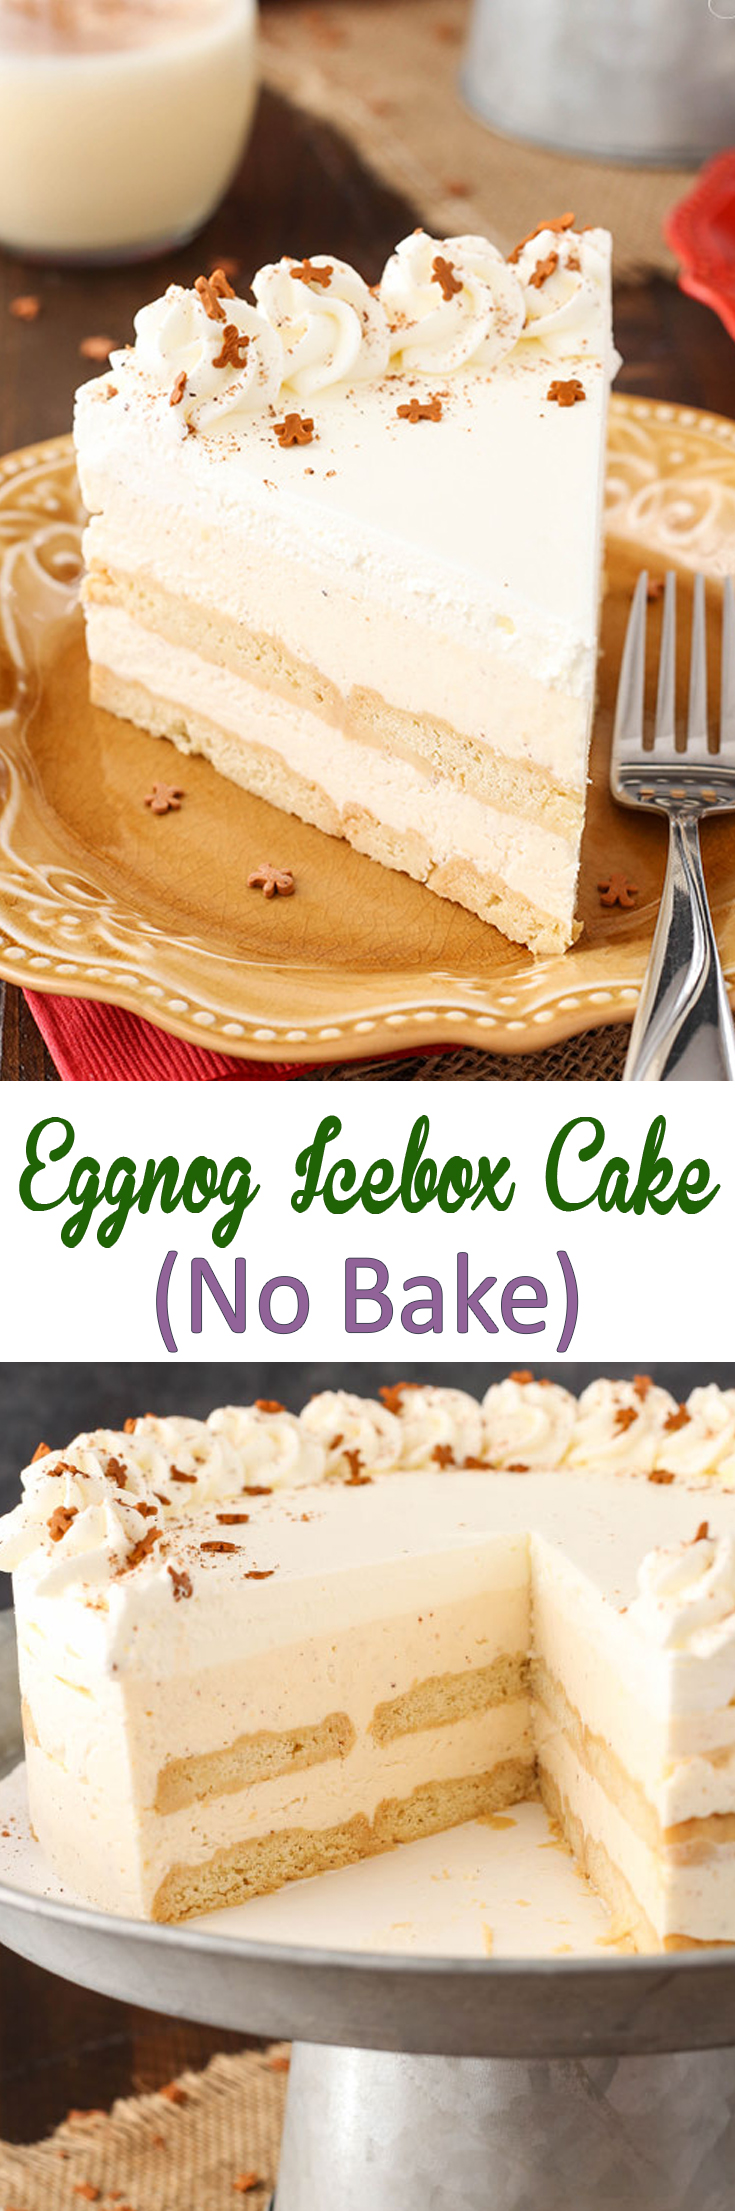 No Bake Eggnog Icebox Cake